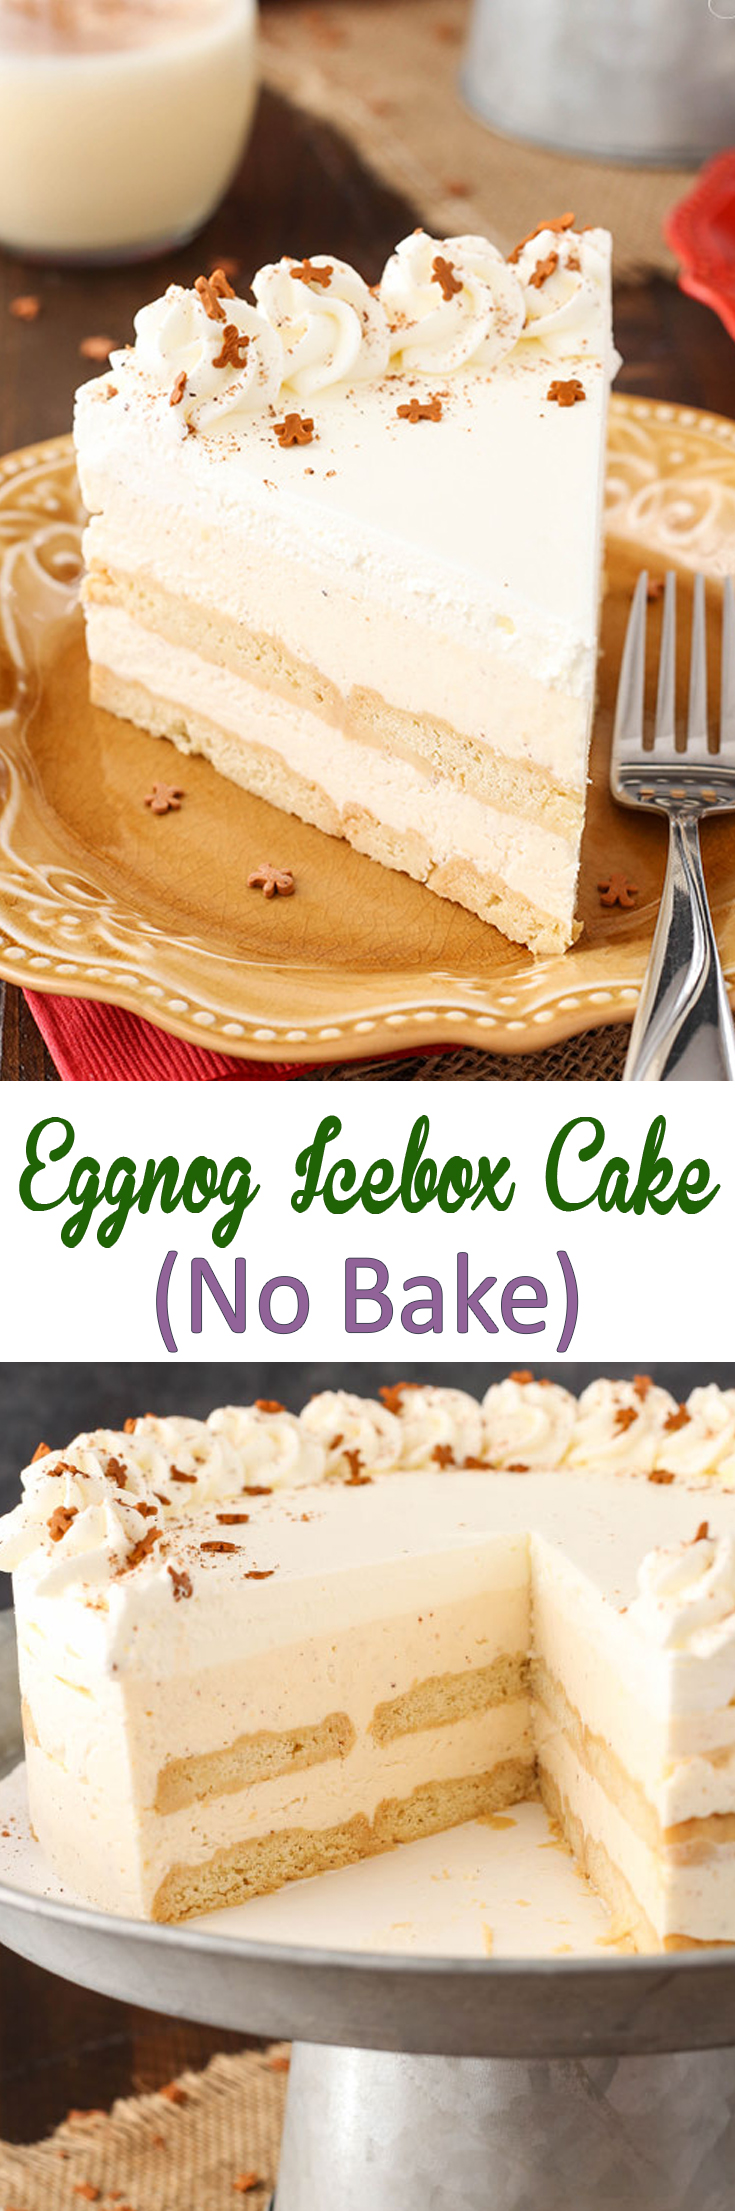 No Bake Eggnog Icebox Cake